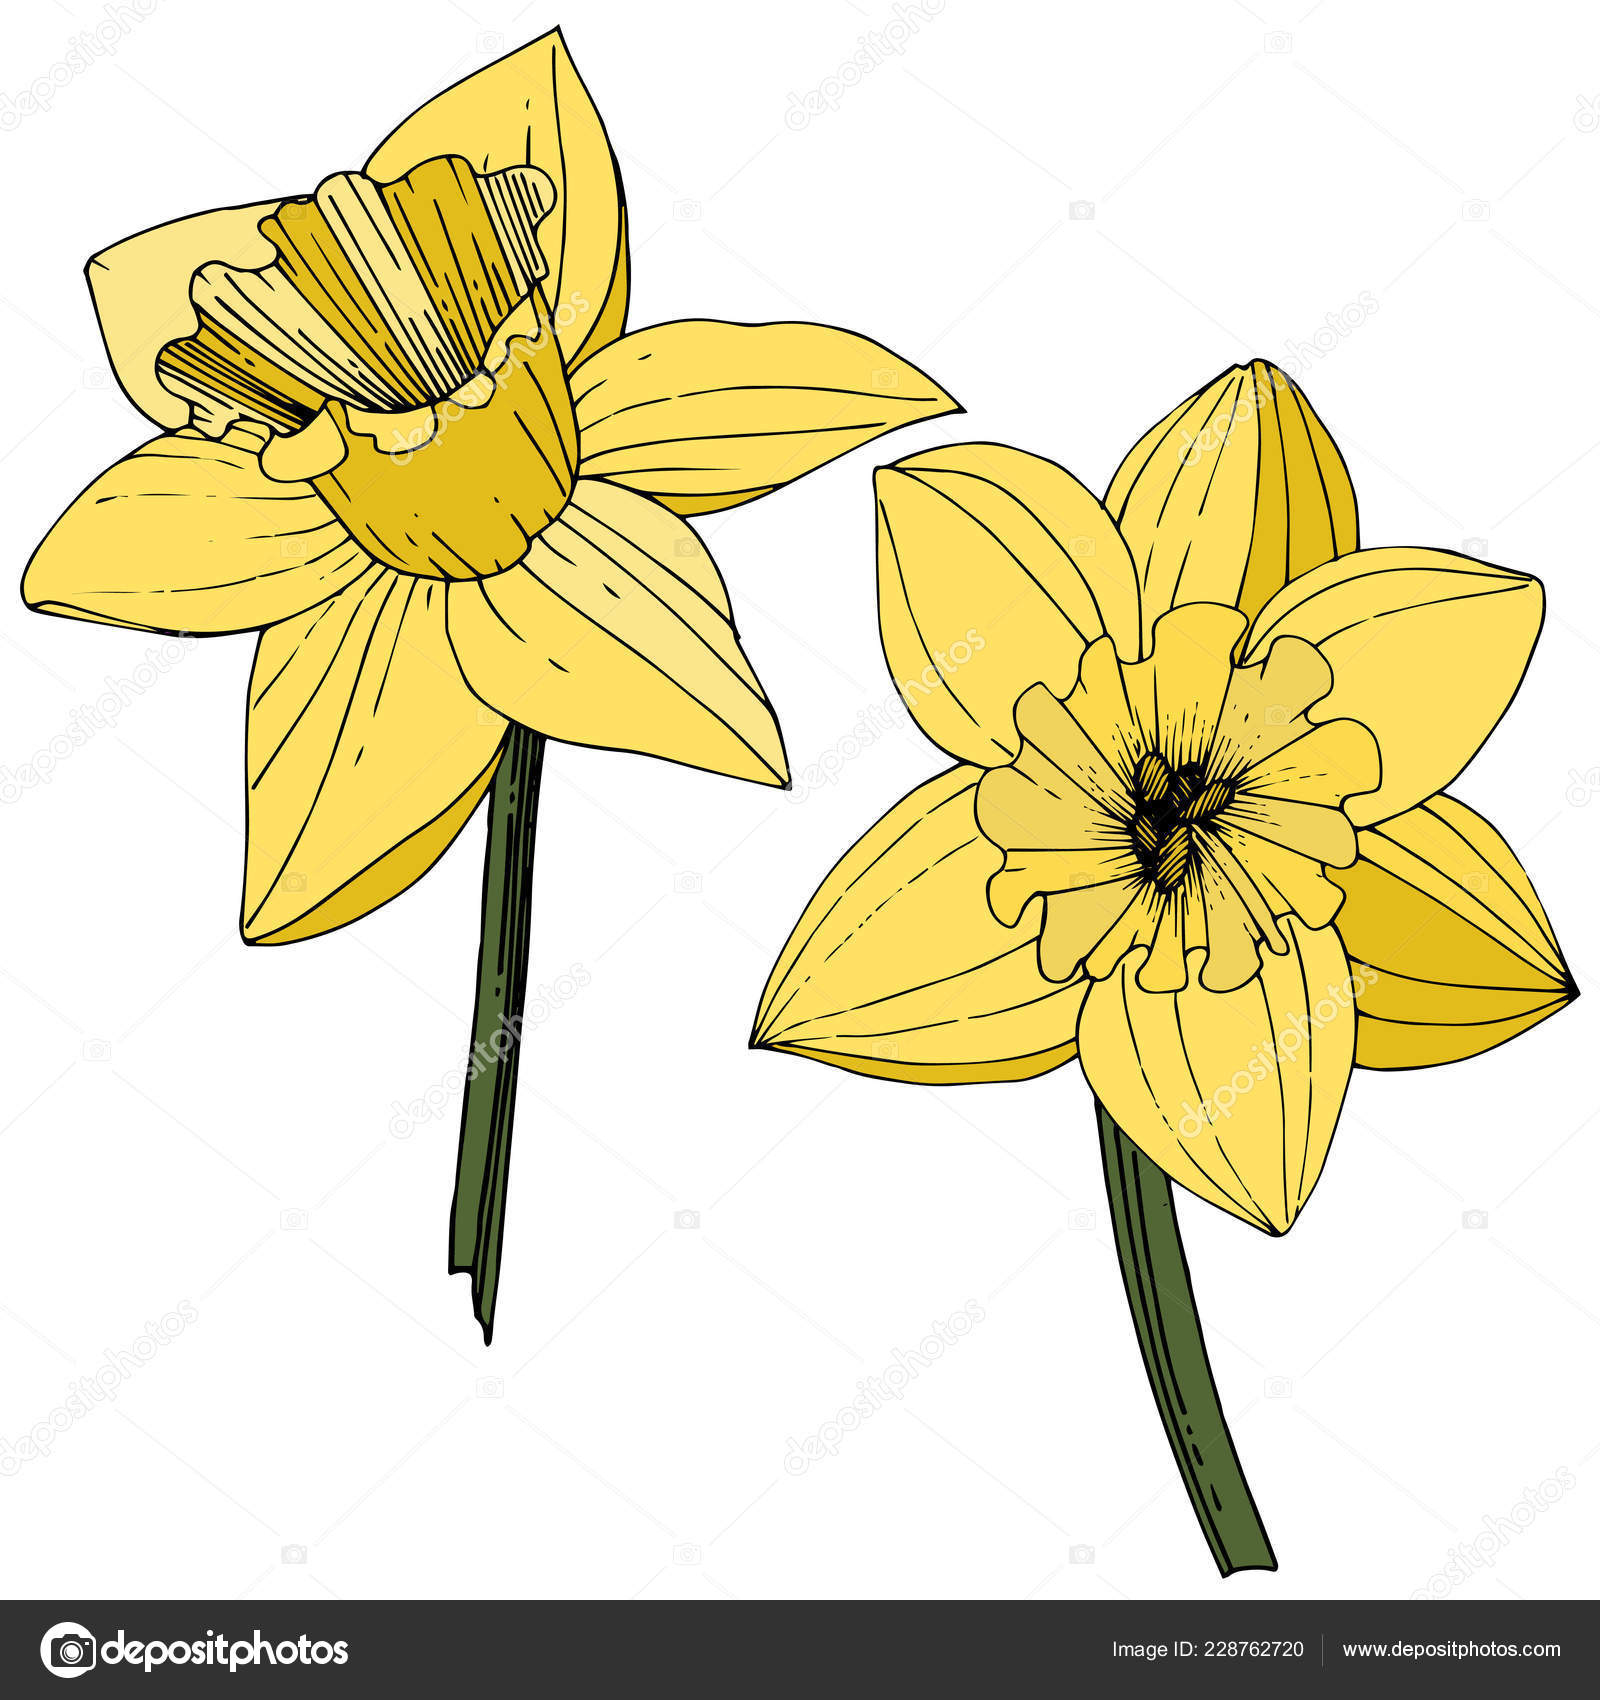 áˆ daffodil clip art stock images royalty free daffodils illustrations download on depositphotos